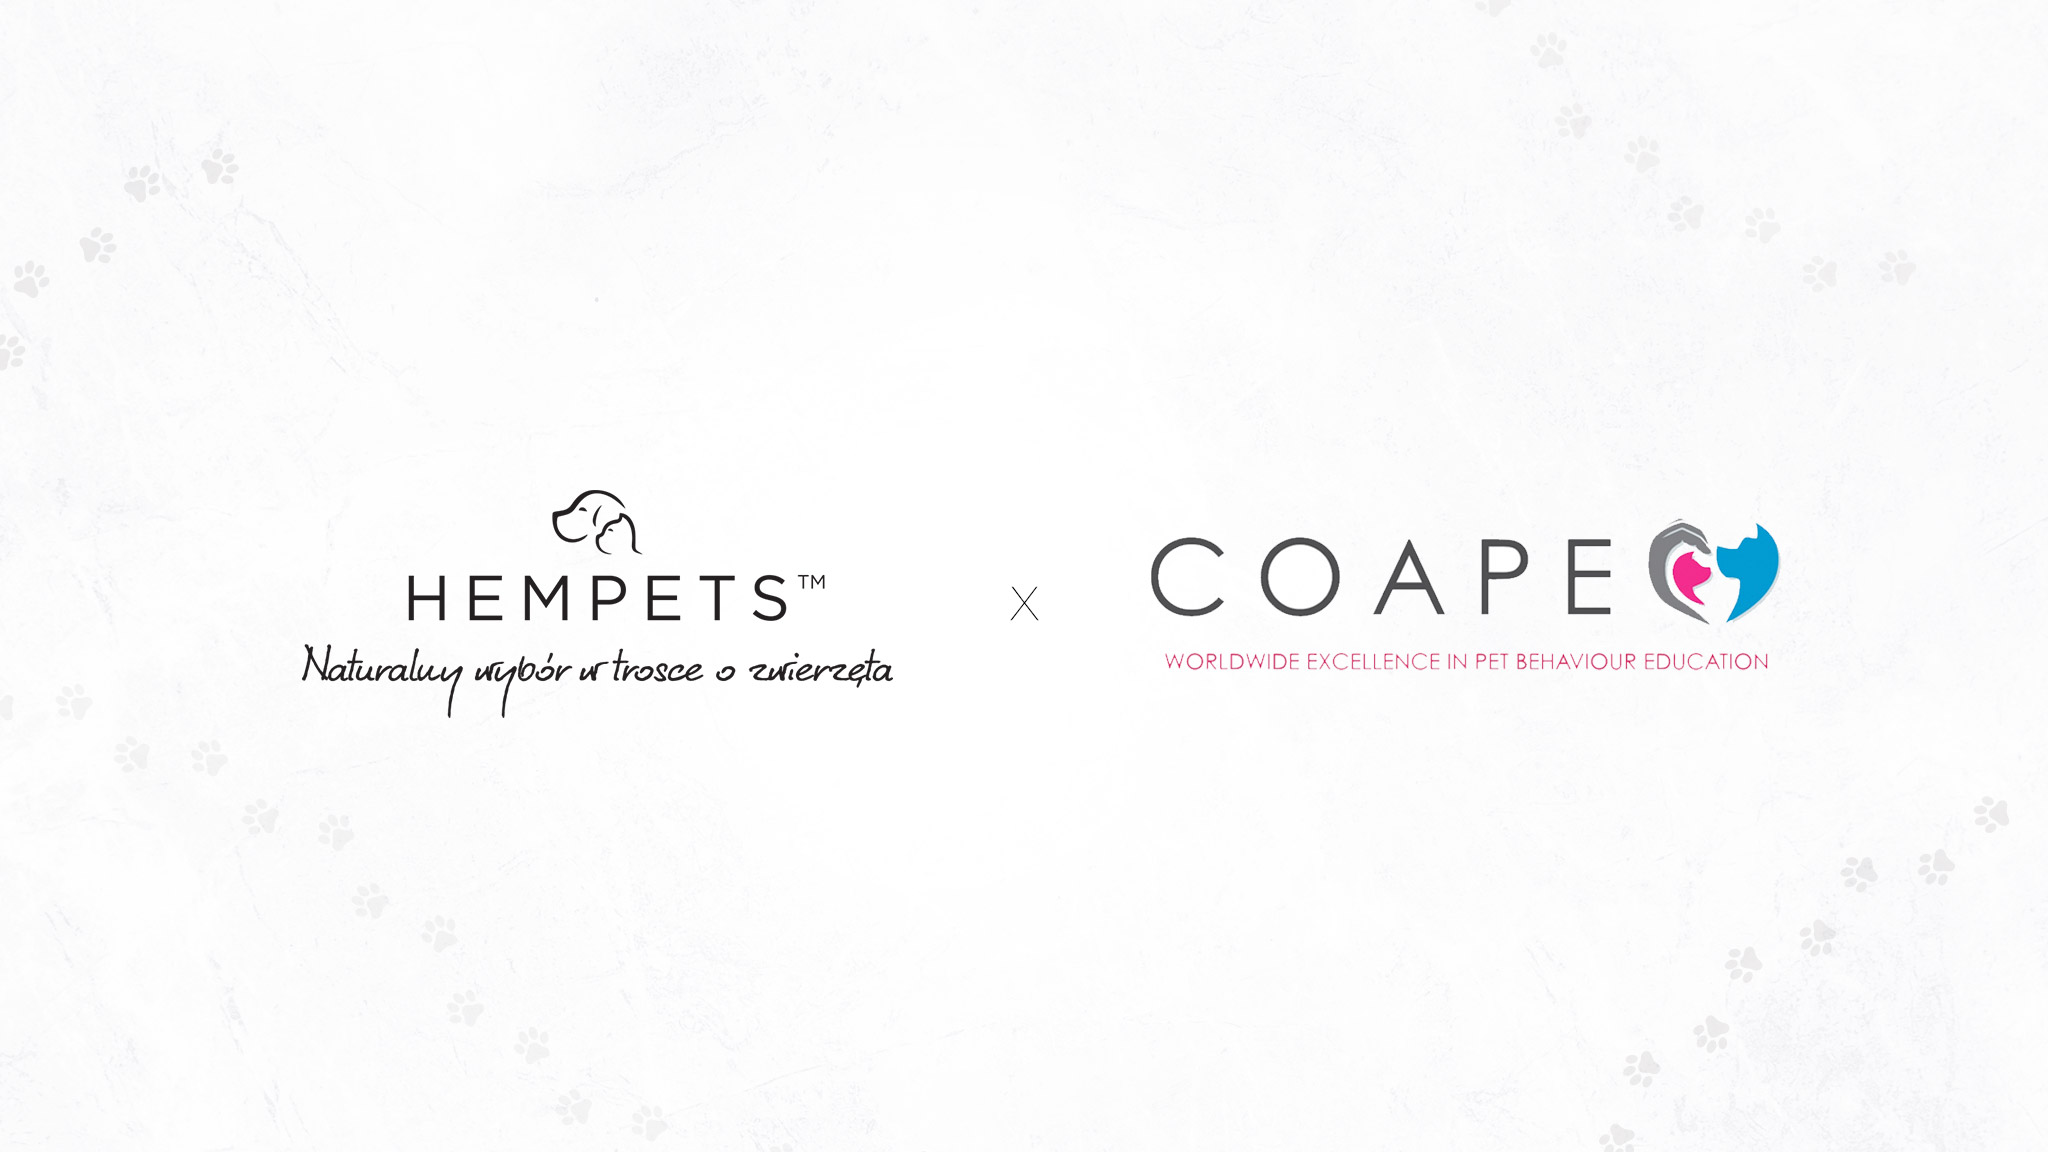 Stowarzyszenie Behawiorystów i Trenerów COAPE rekomenduje markę HEMPETS™